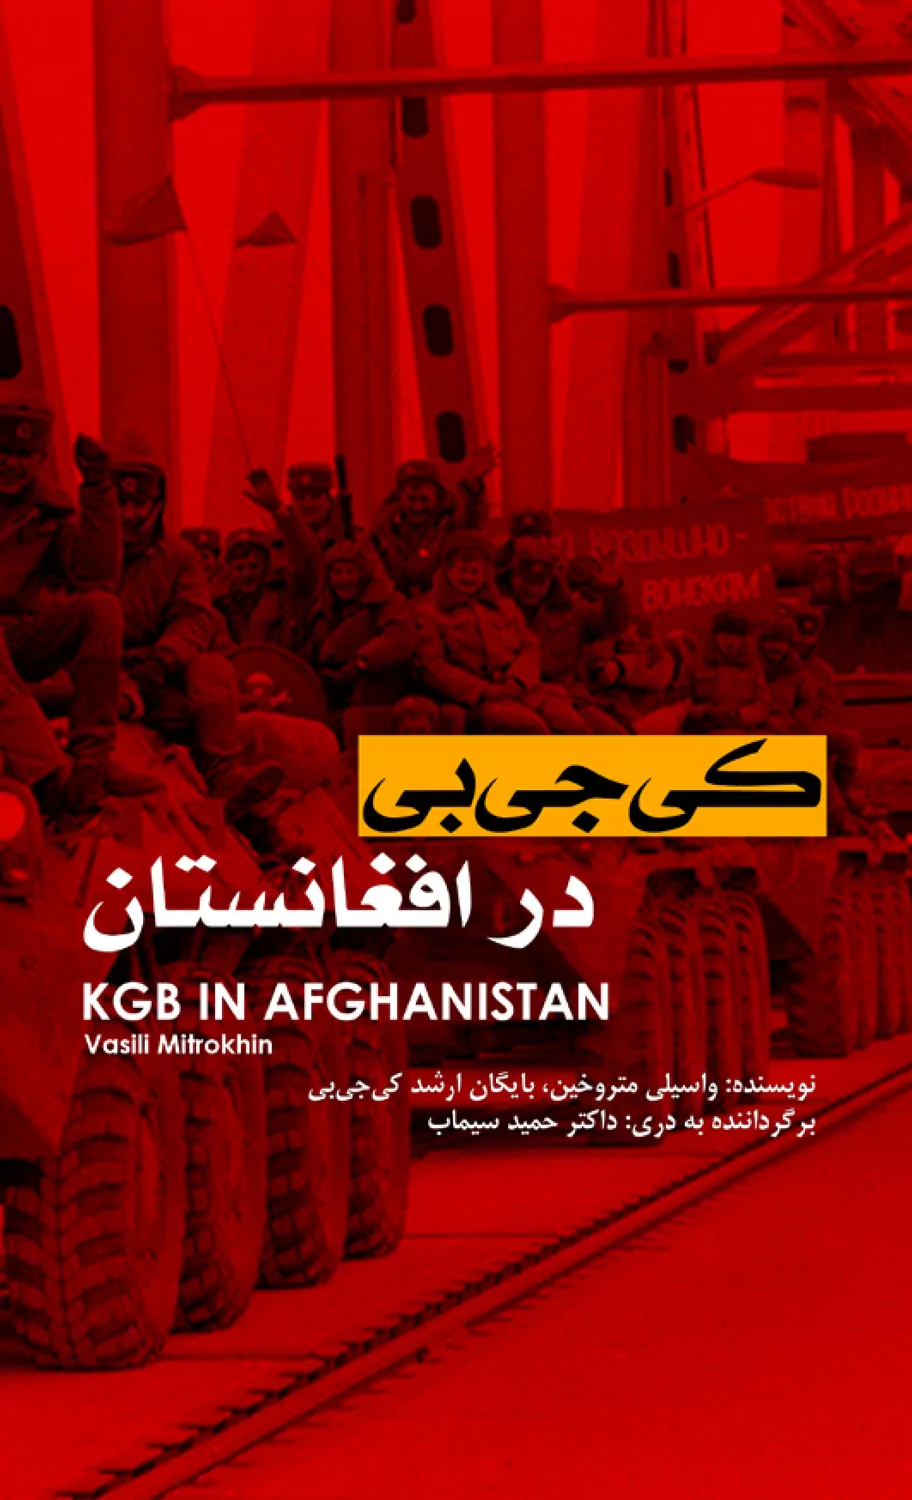 کی جی بی در افغانستان